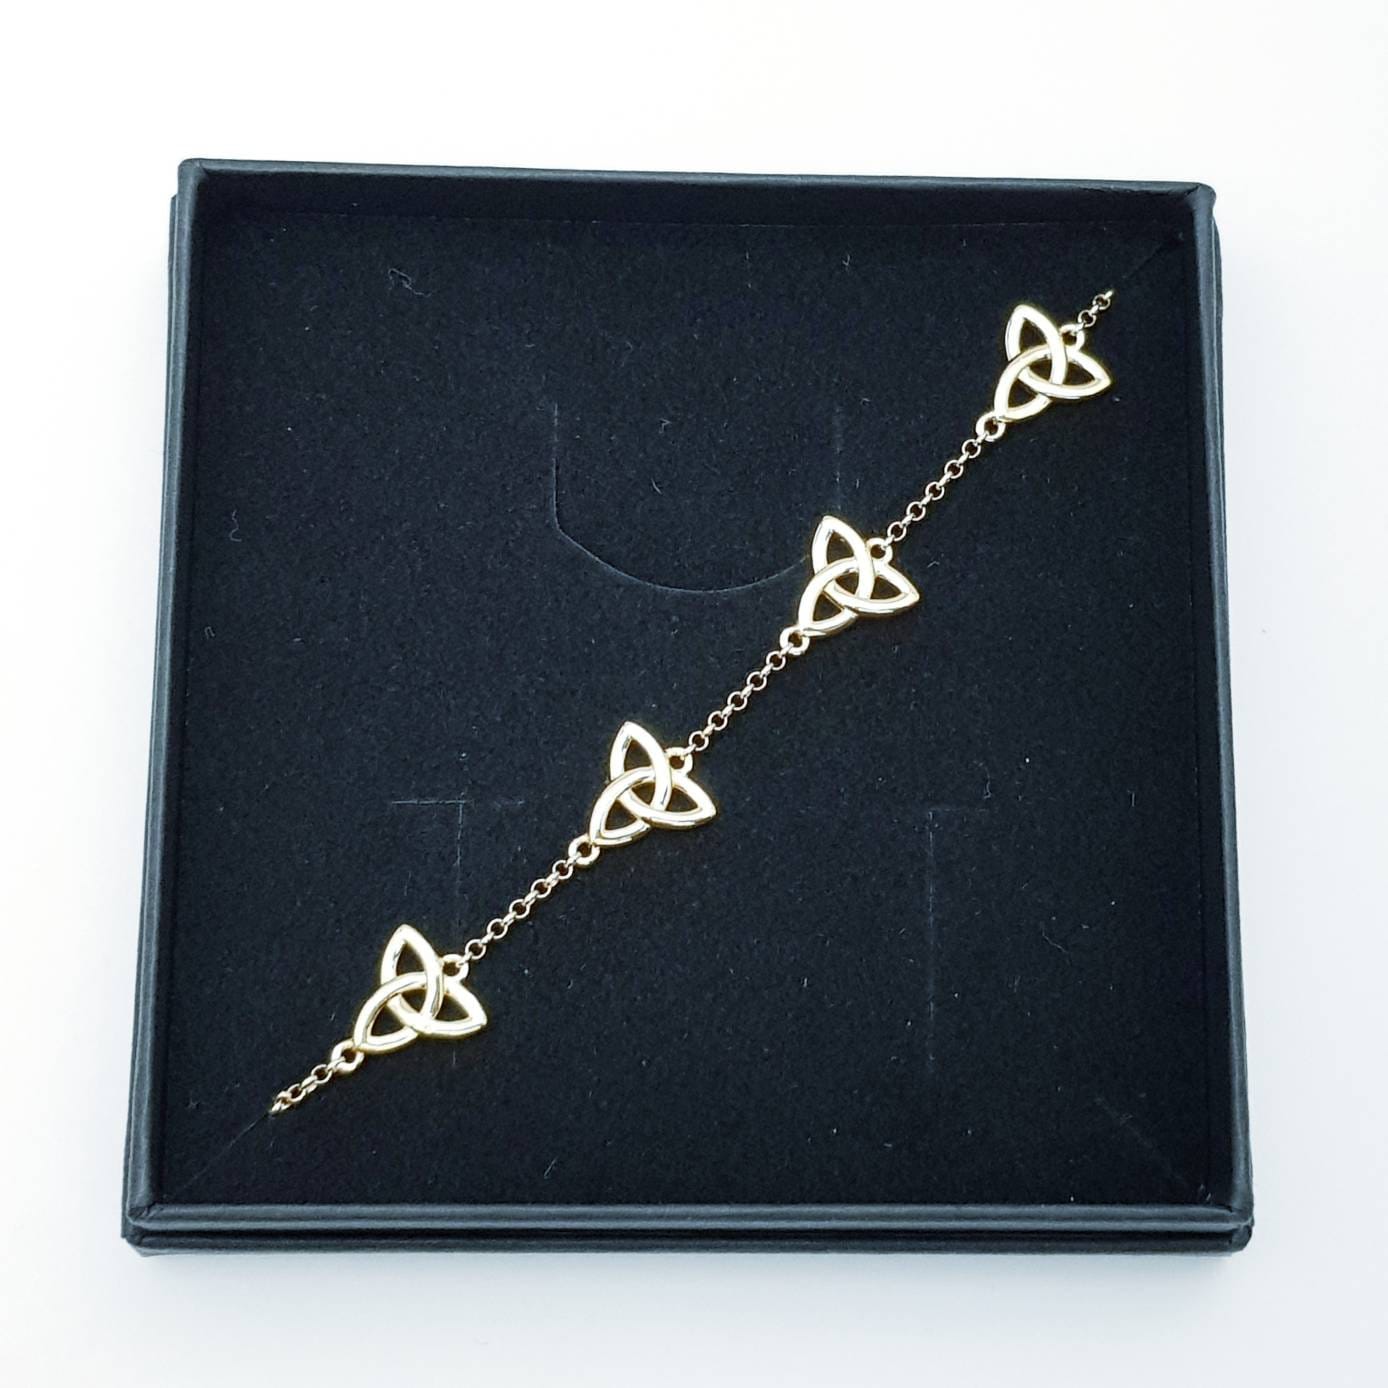 Celtic knot bracelet, small trinity knot bracelet, gold celtic bracelet